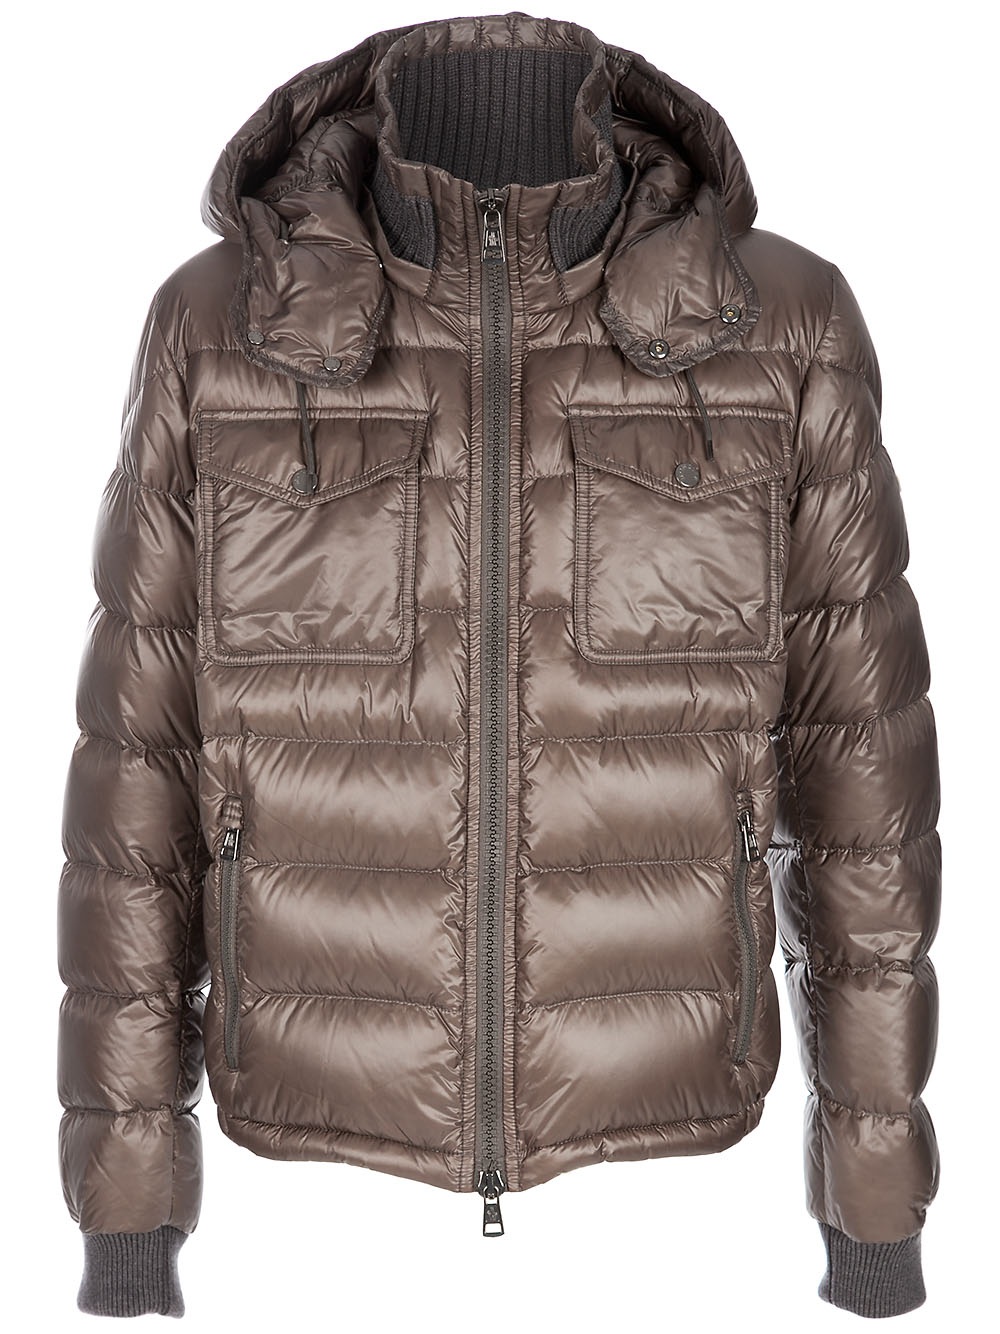 Moncler Fedor Jacket in Brown for Men - Lyst